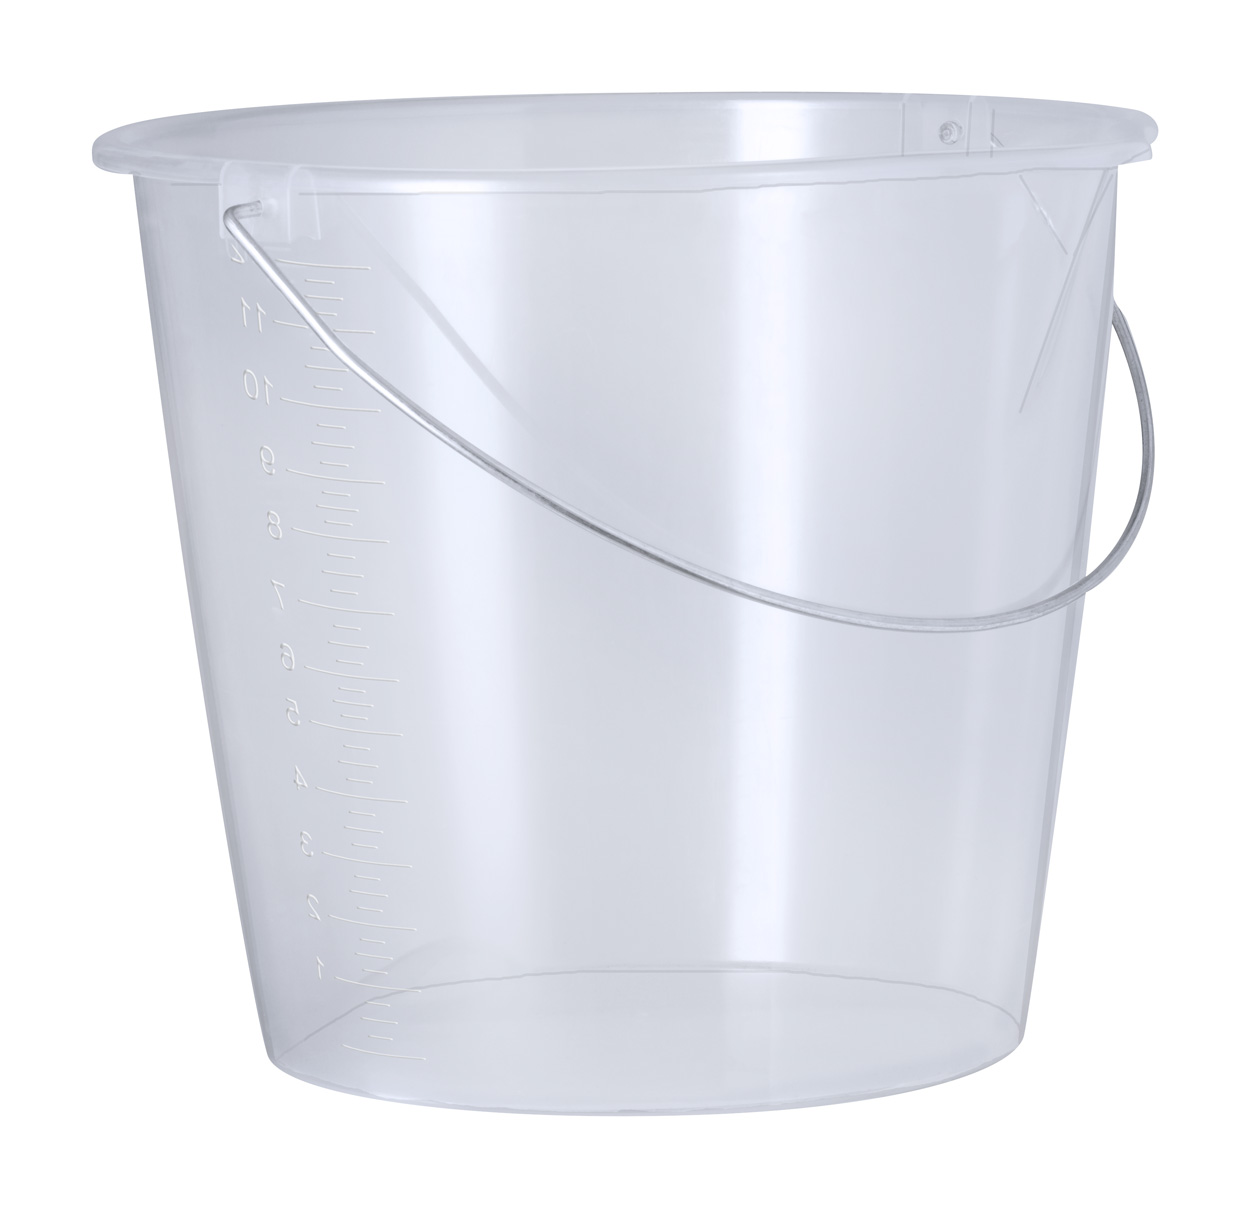 Promo  Lunux measuring bucket